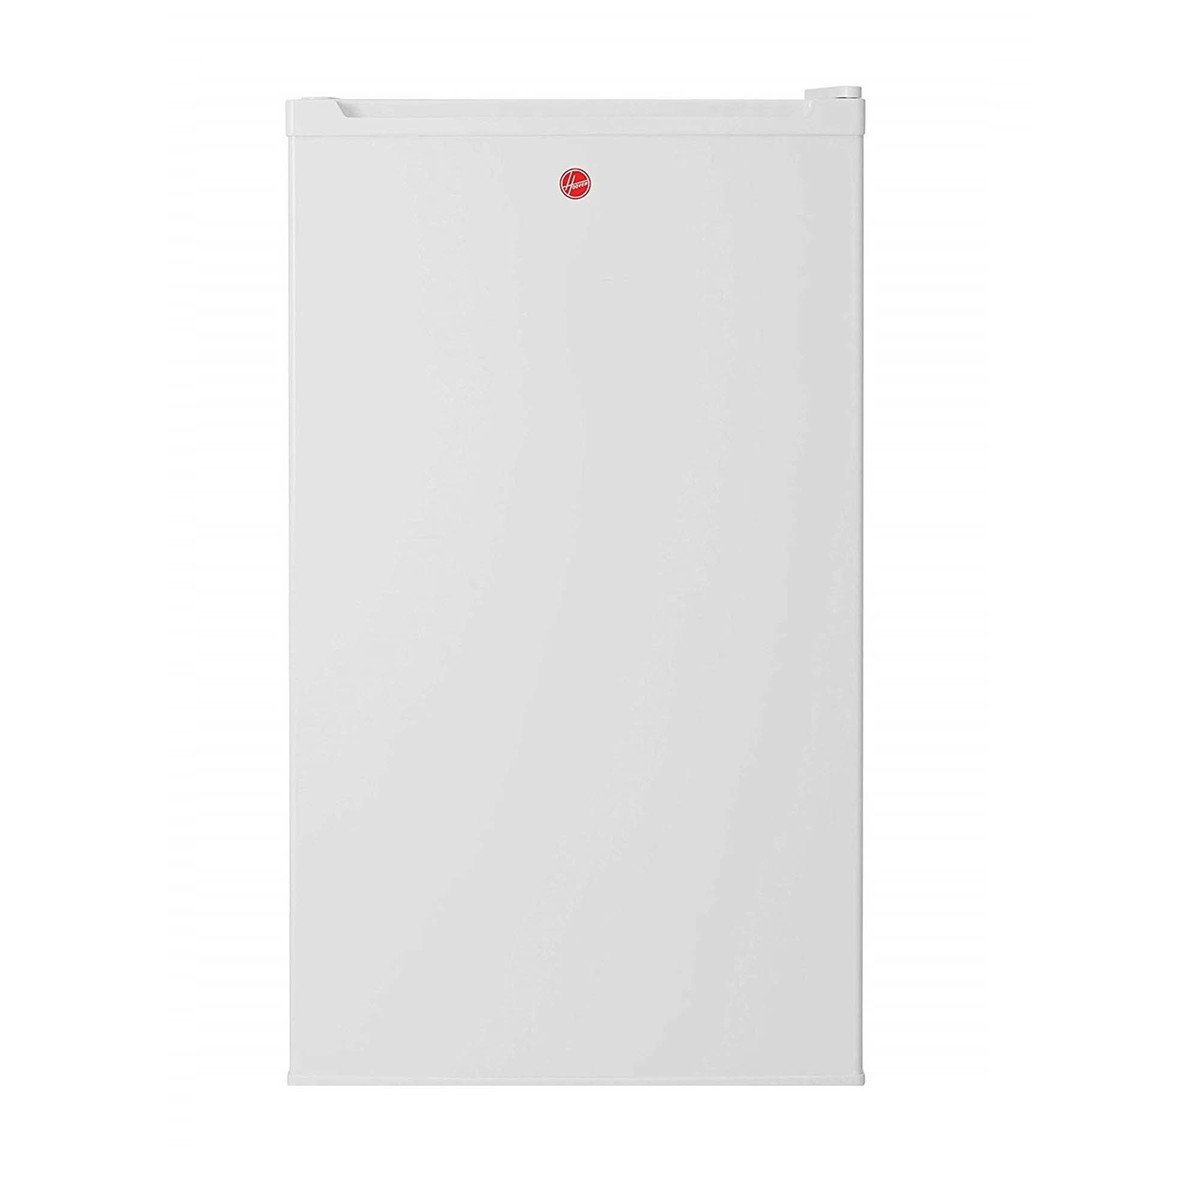 Hoover Single Door Refrigerator HSD92-S 120Ltr